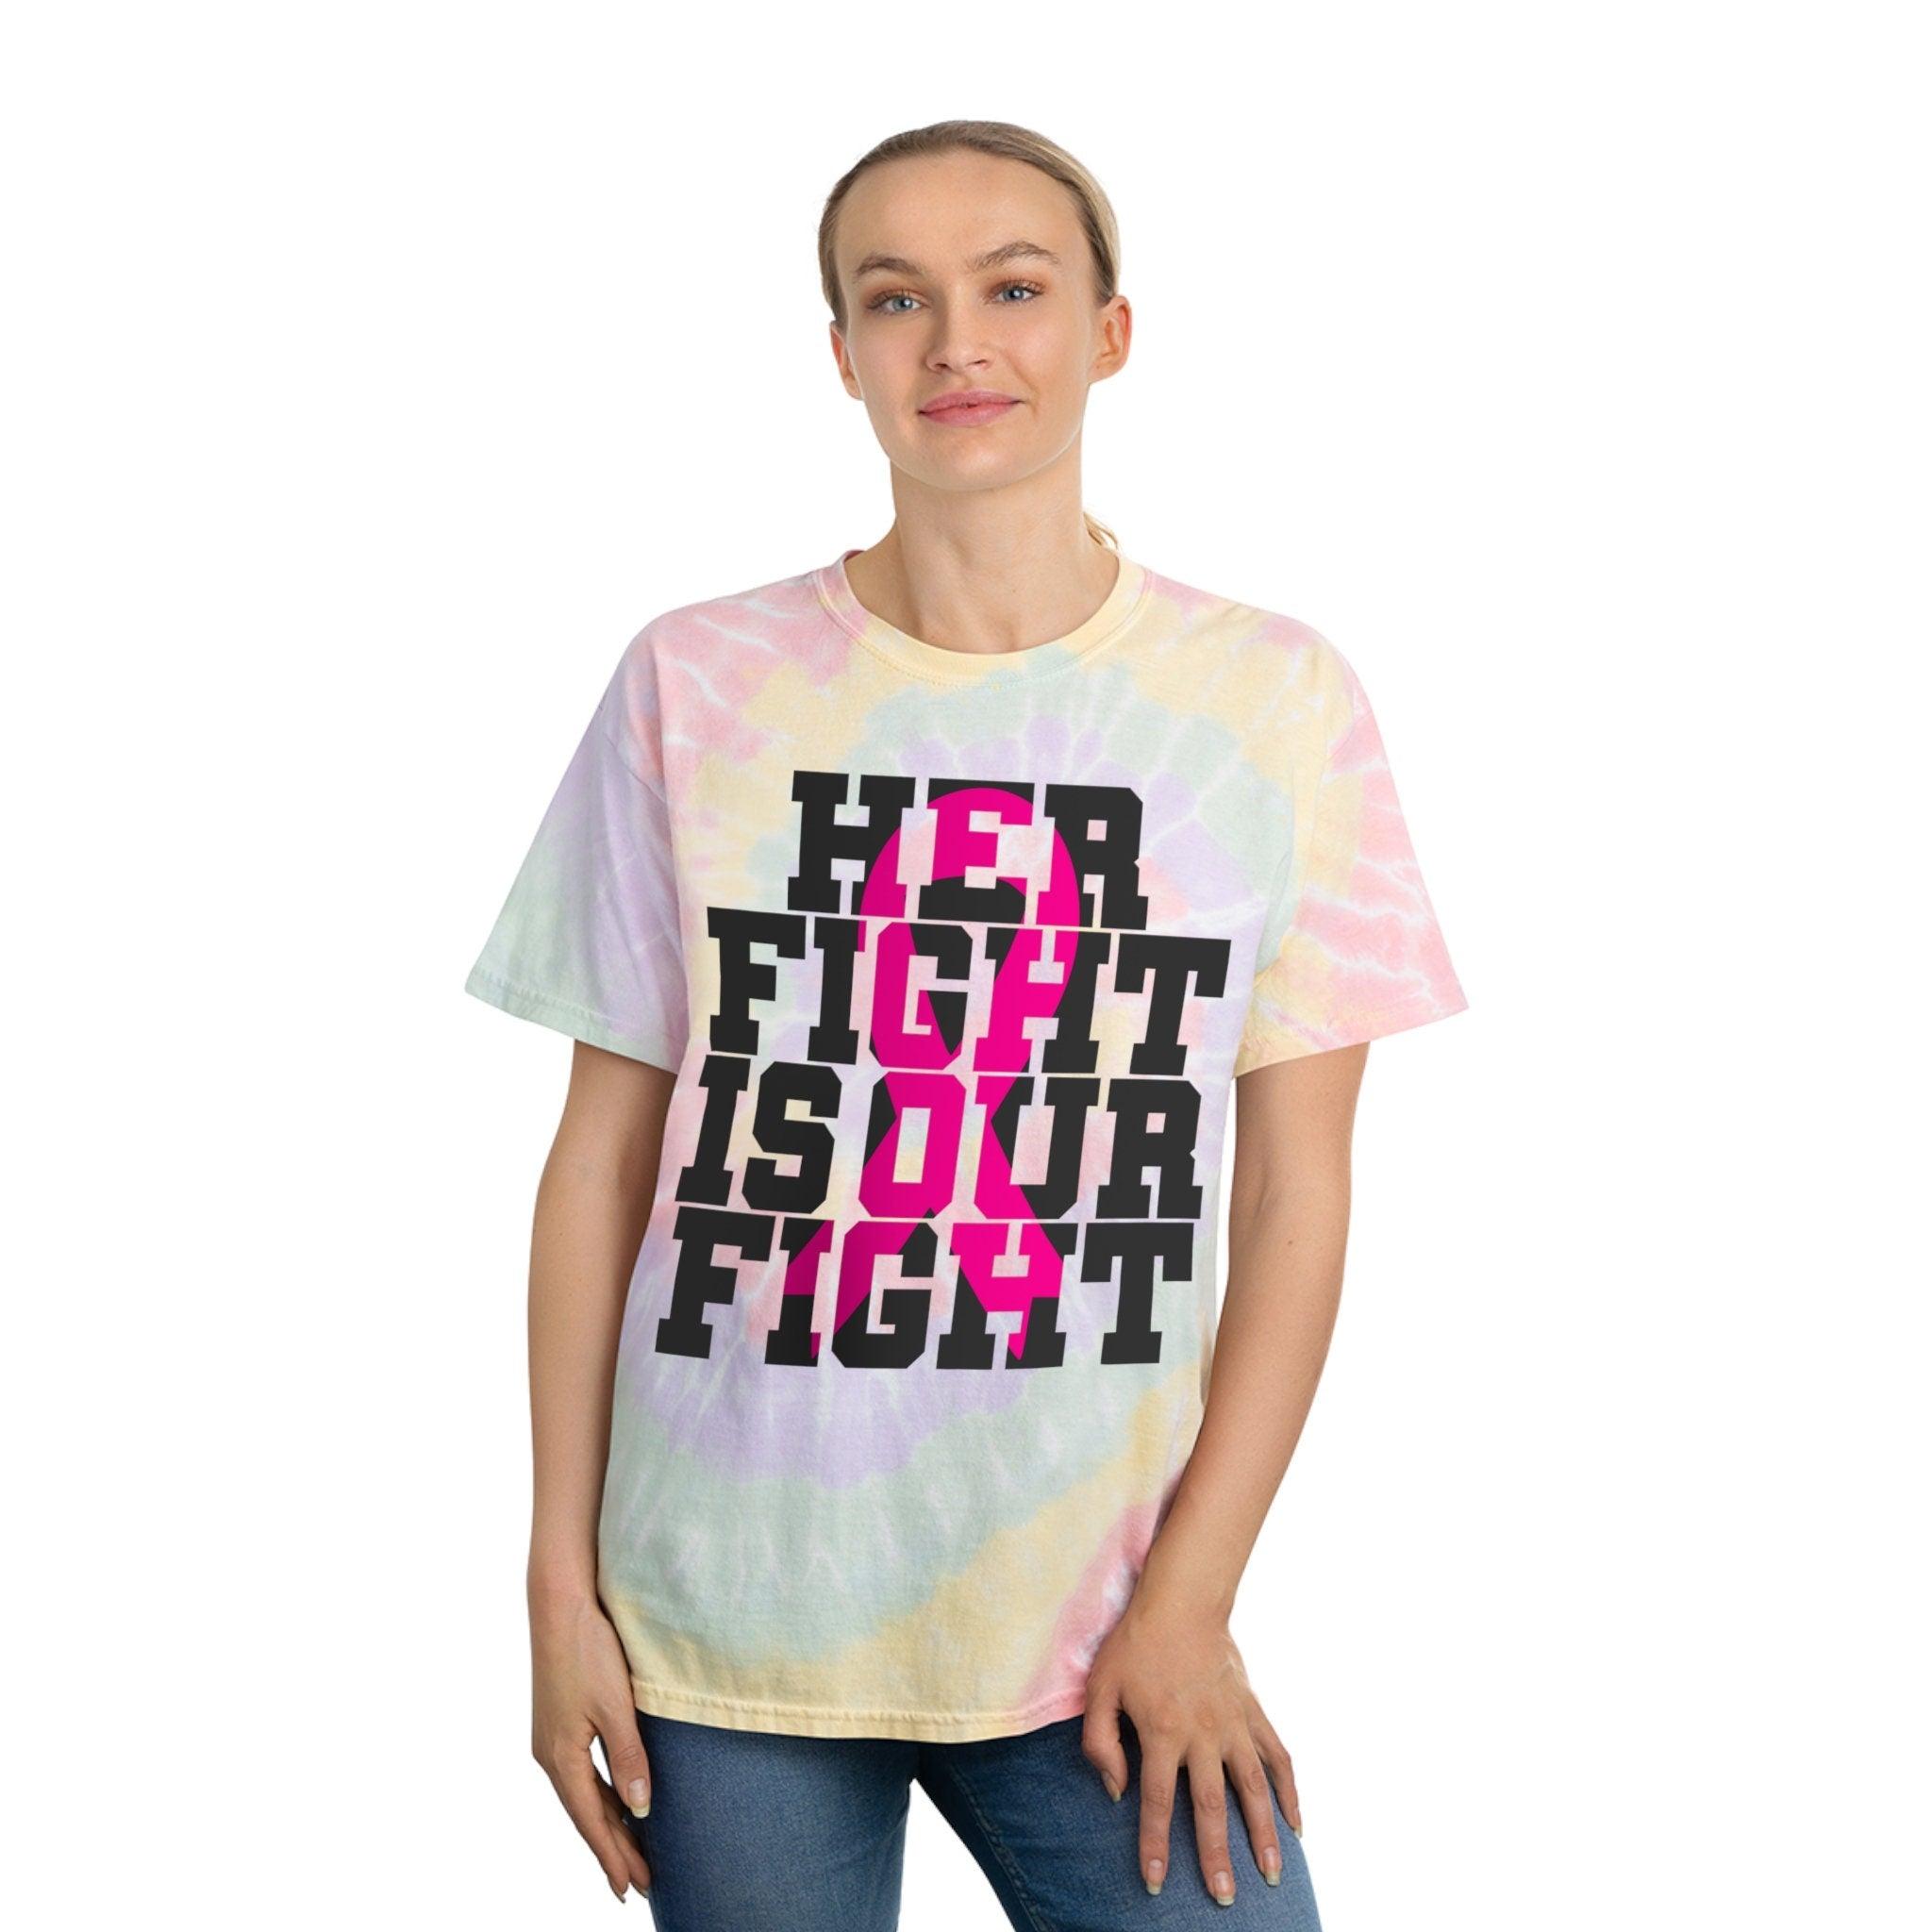 उनकी लड़ाई हमारी लड़ाई है ब्रेस्ट कैंसर शर्ट, कैंसर सर्वाइवर शर्ट, ब्रेस्ट कैंसर जागरूकता, पिंक रिबन टाई-डाई टी, स्पाइरल - प्लसमिनस्को.कॉम